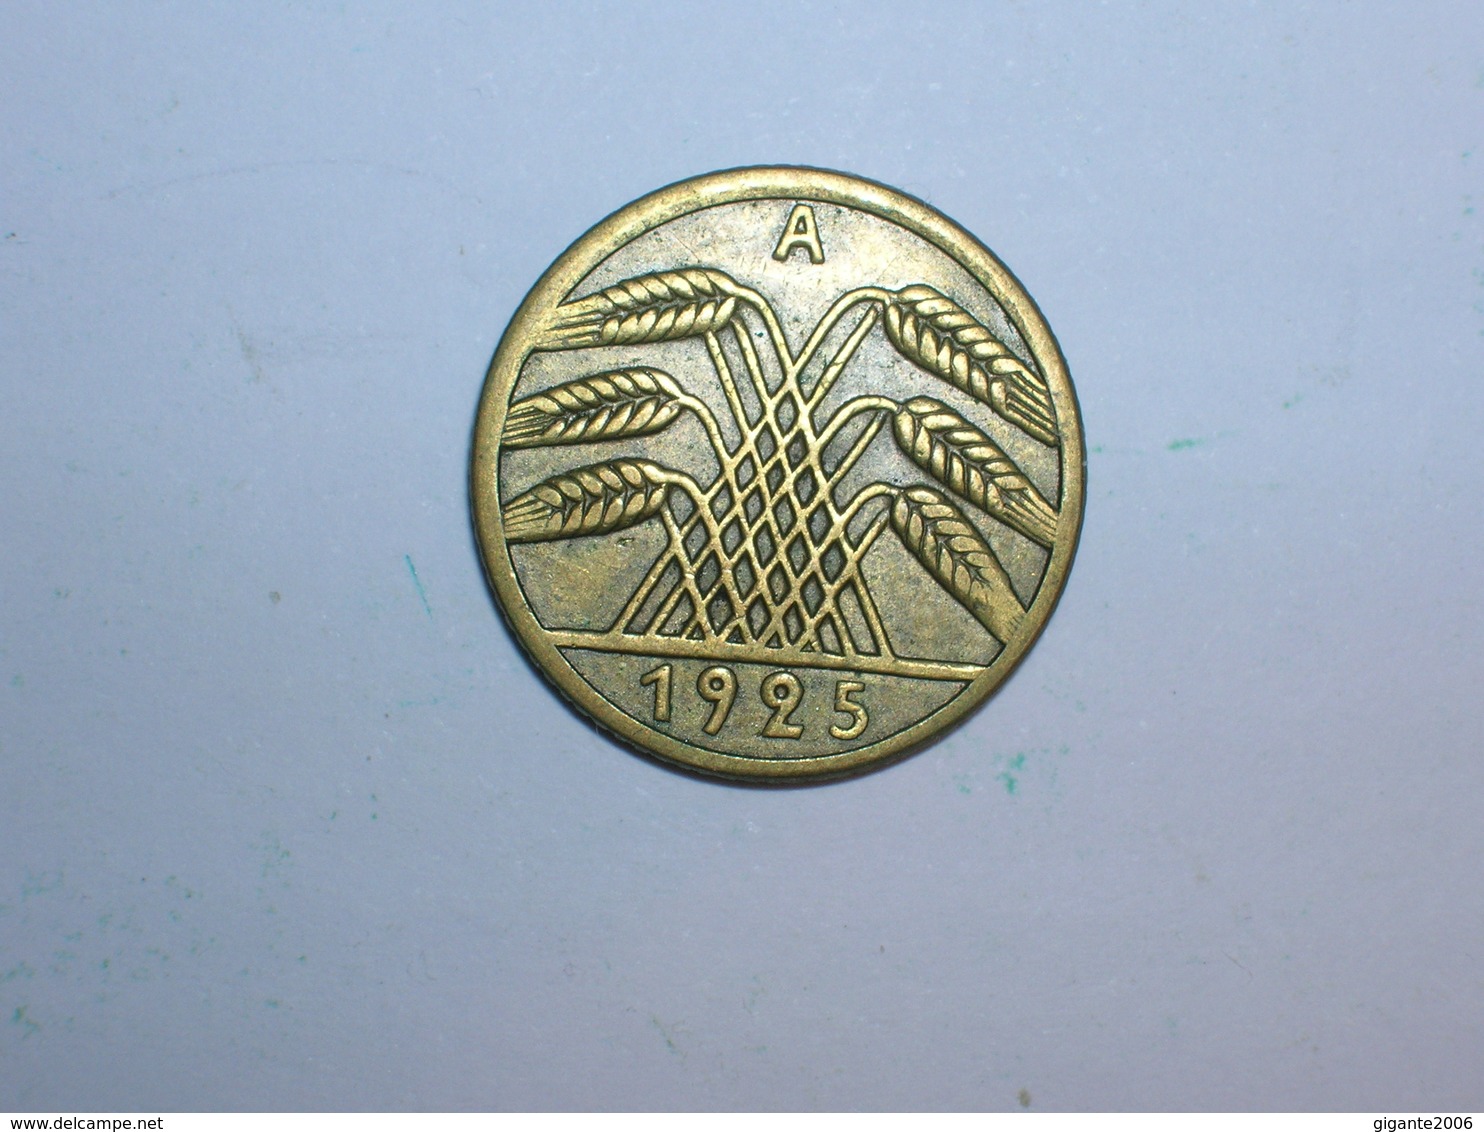 ALEMANIA 5 REICHSPFENNIG 1925 A (1339) - 5 Rentenpfennig & 5 Reichspfennig